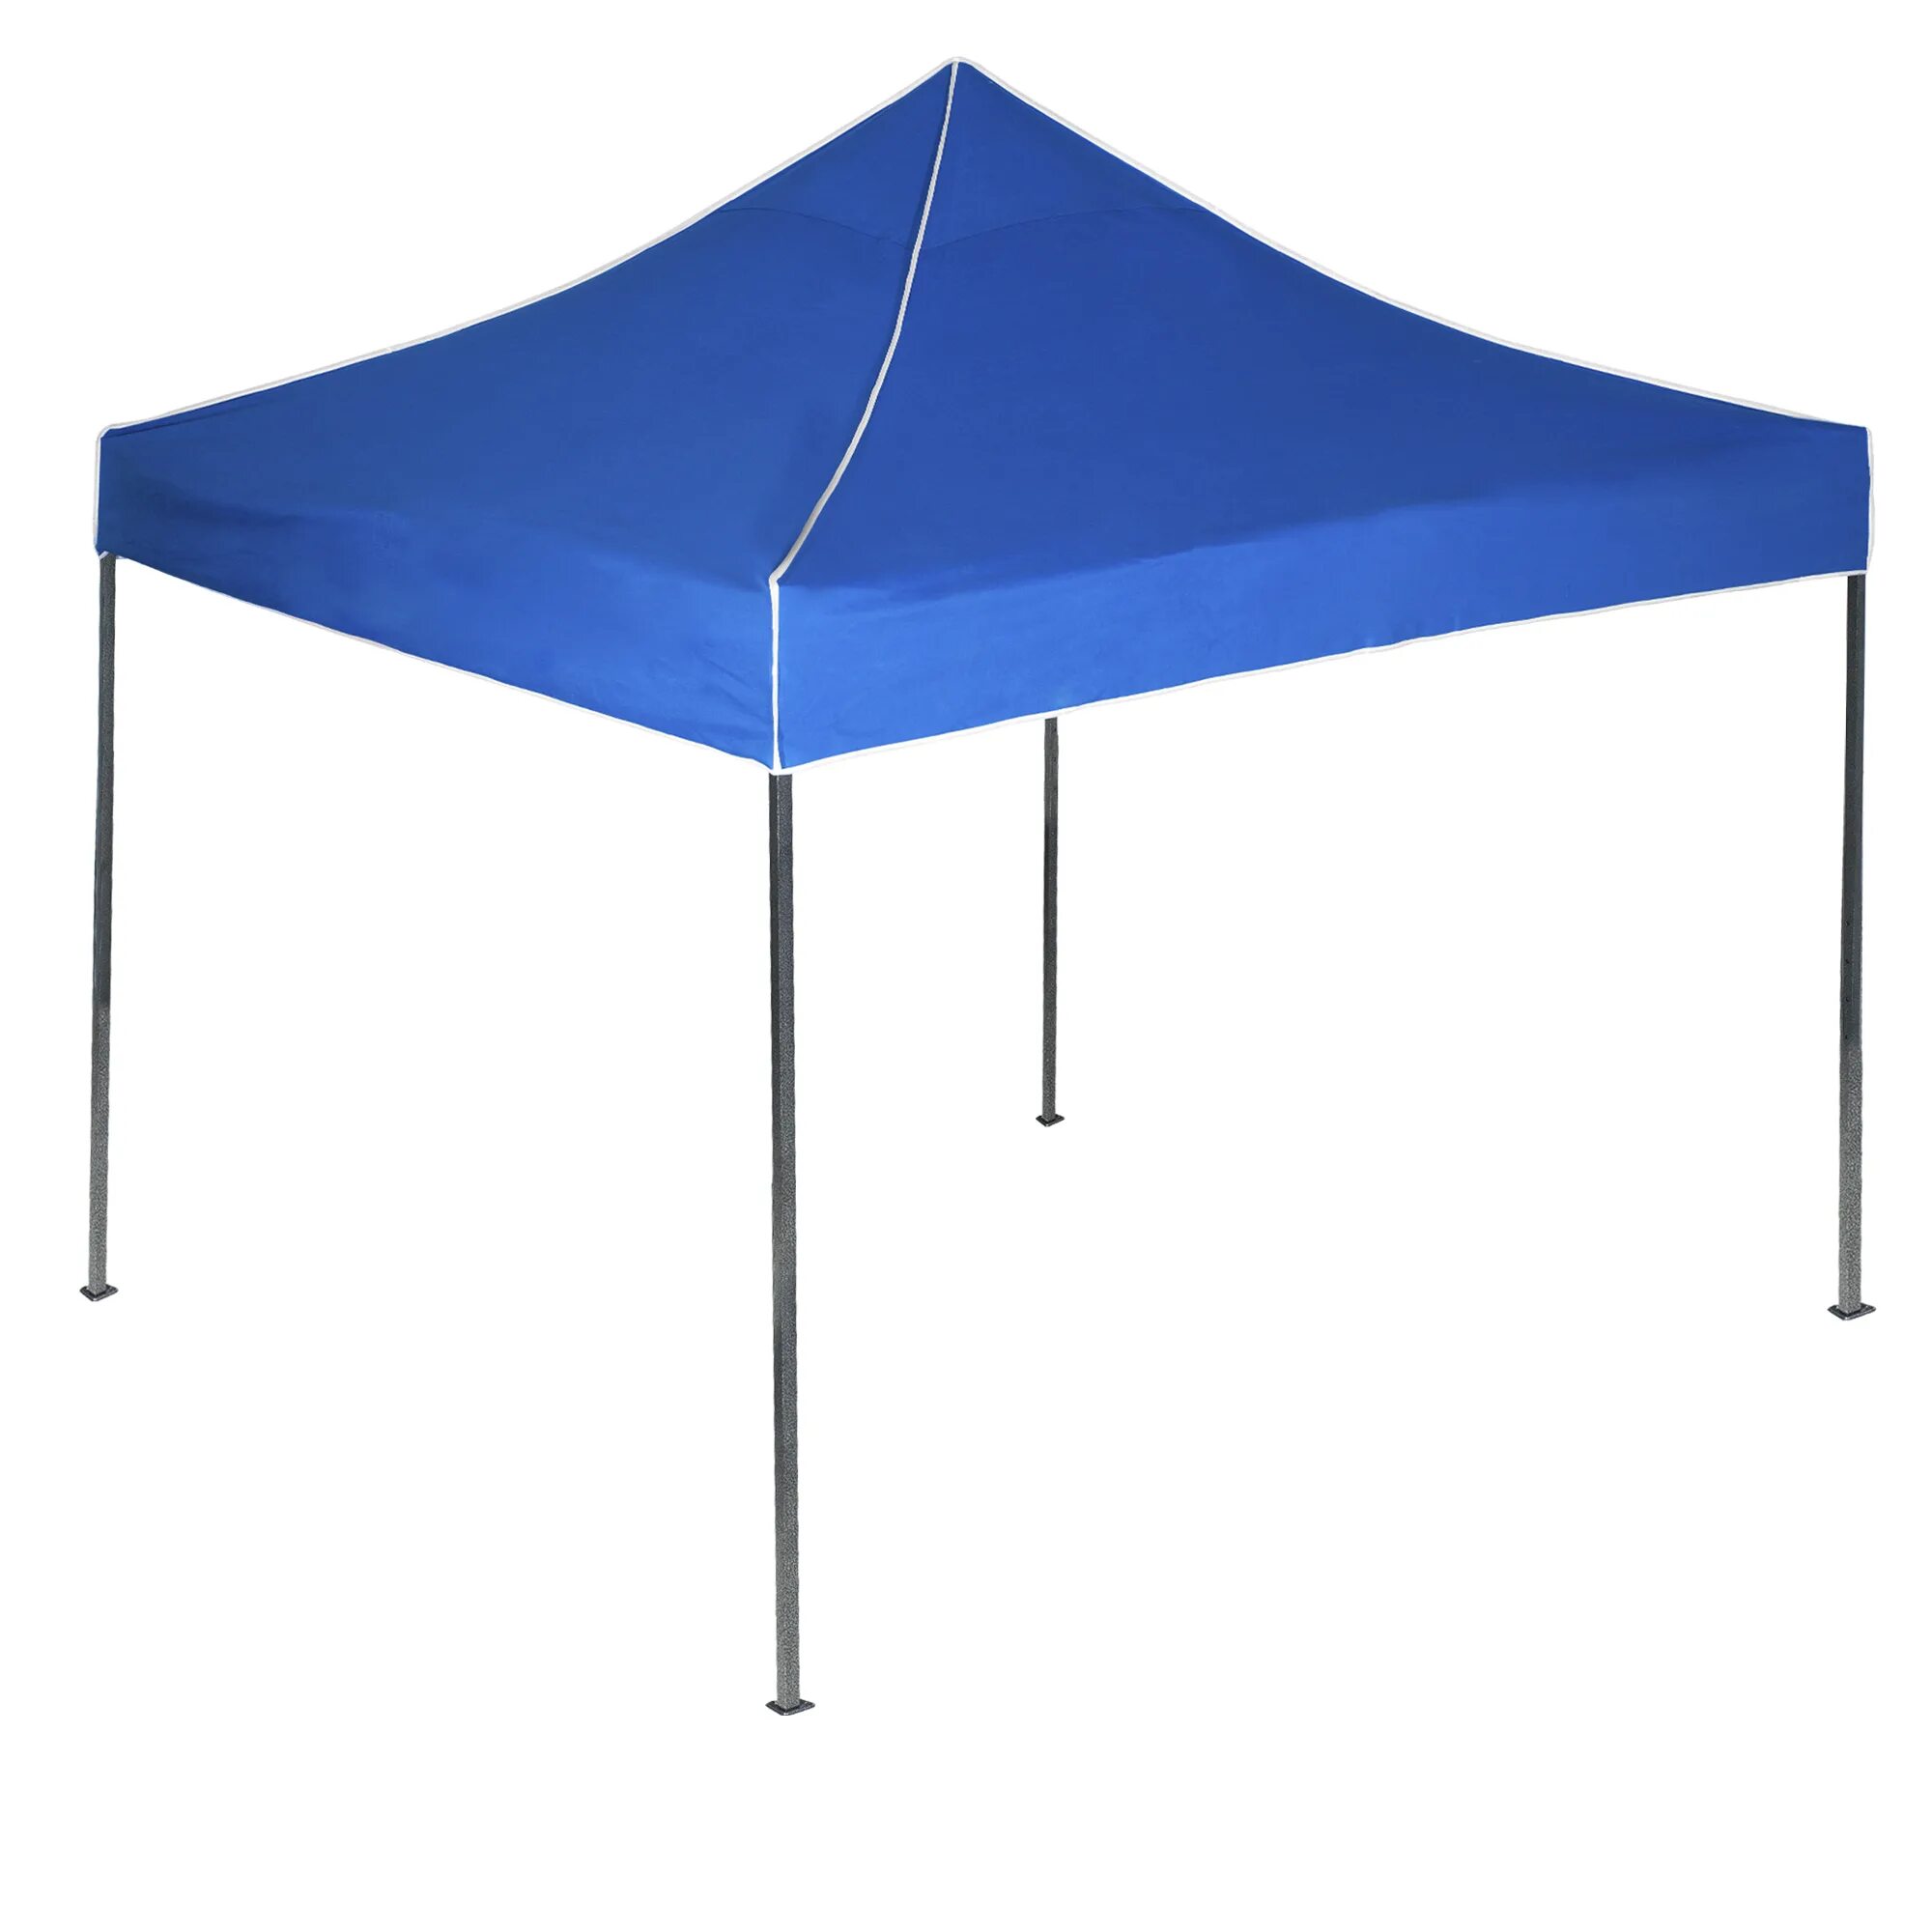 Тент 2.5 на 1.3. Торговые палатки на праздниках. Торговая палатка с неоном. Canopy Lighting for Practice.